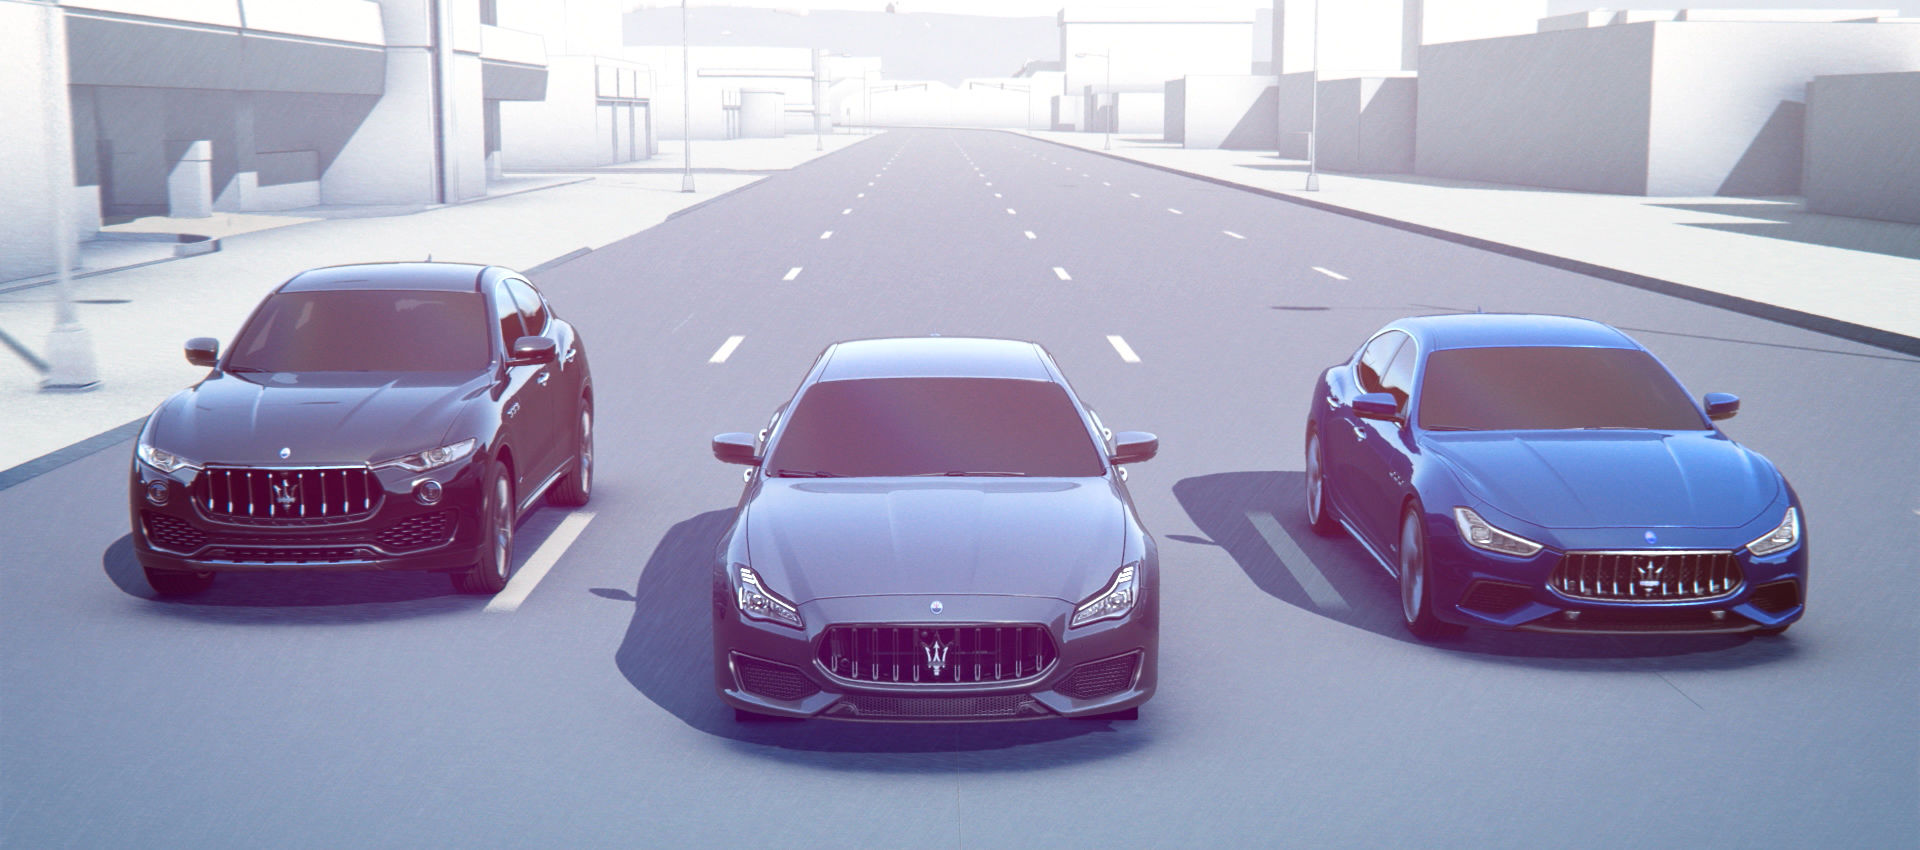 Maserati Surround View Camera - how it works